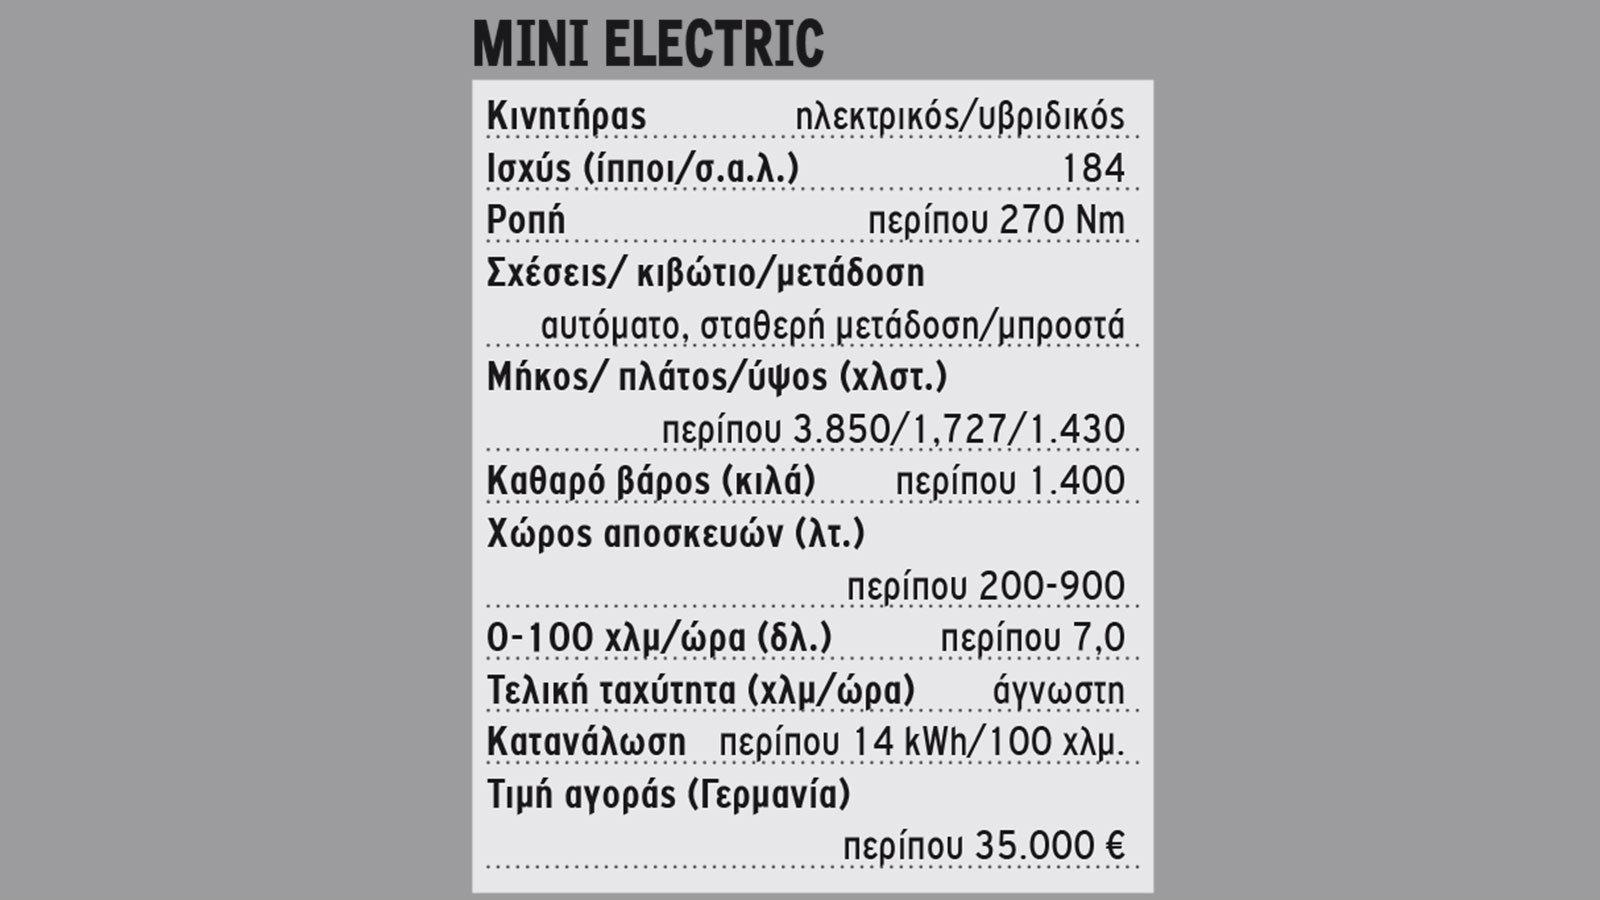 ΠΡΩΤΗ ΟΔΗΓΗΣΗ: Μini Electric 